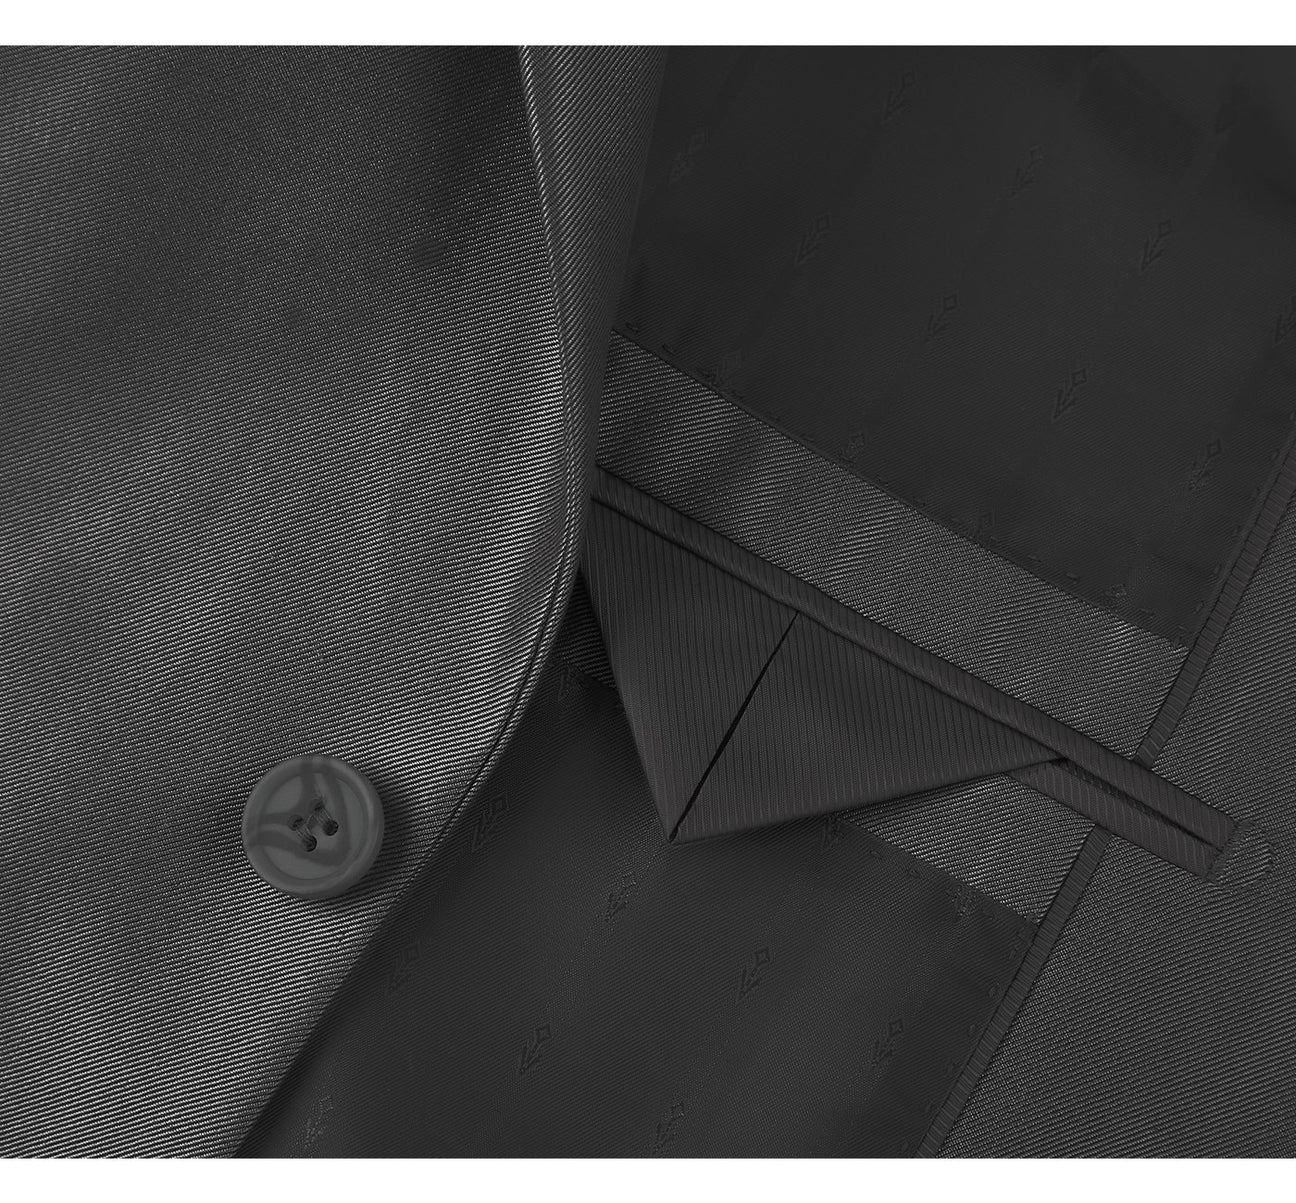 Renoir 207-1 Men's Sharkskin Italian Styled Two Piece Slim Fit Suit